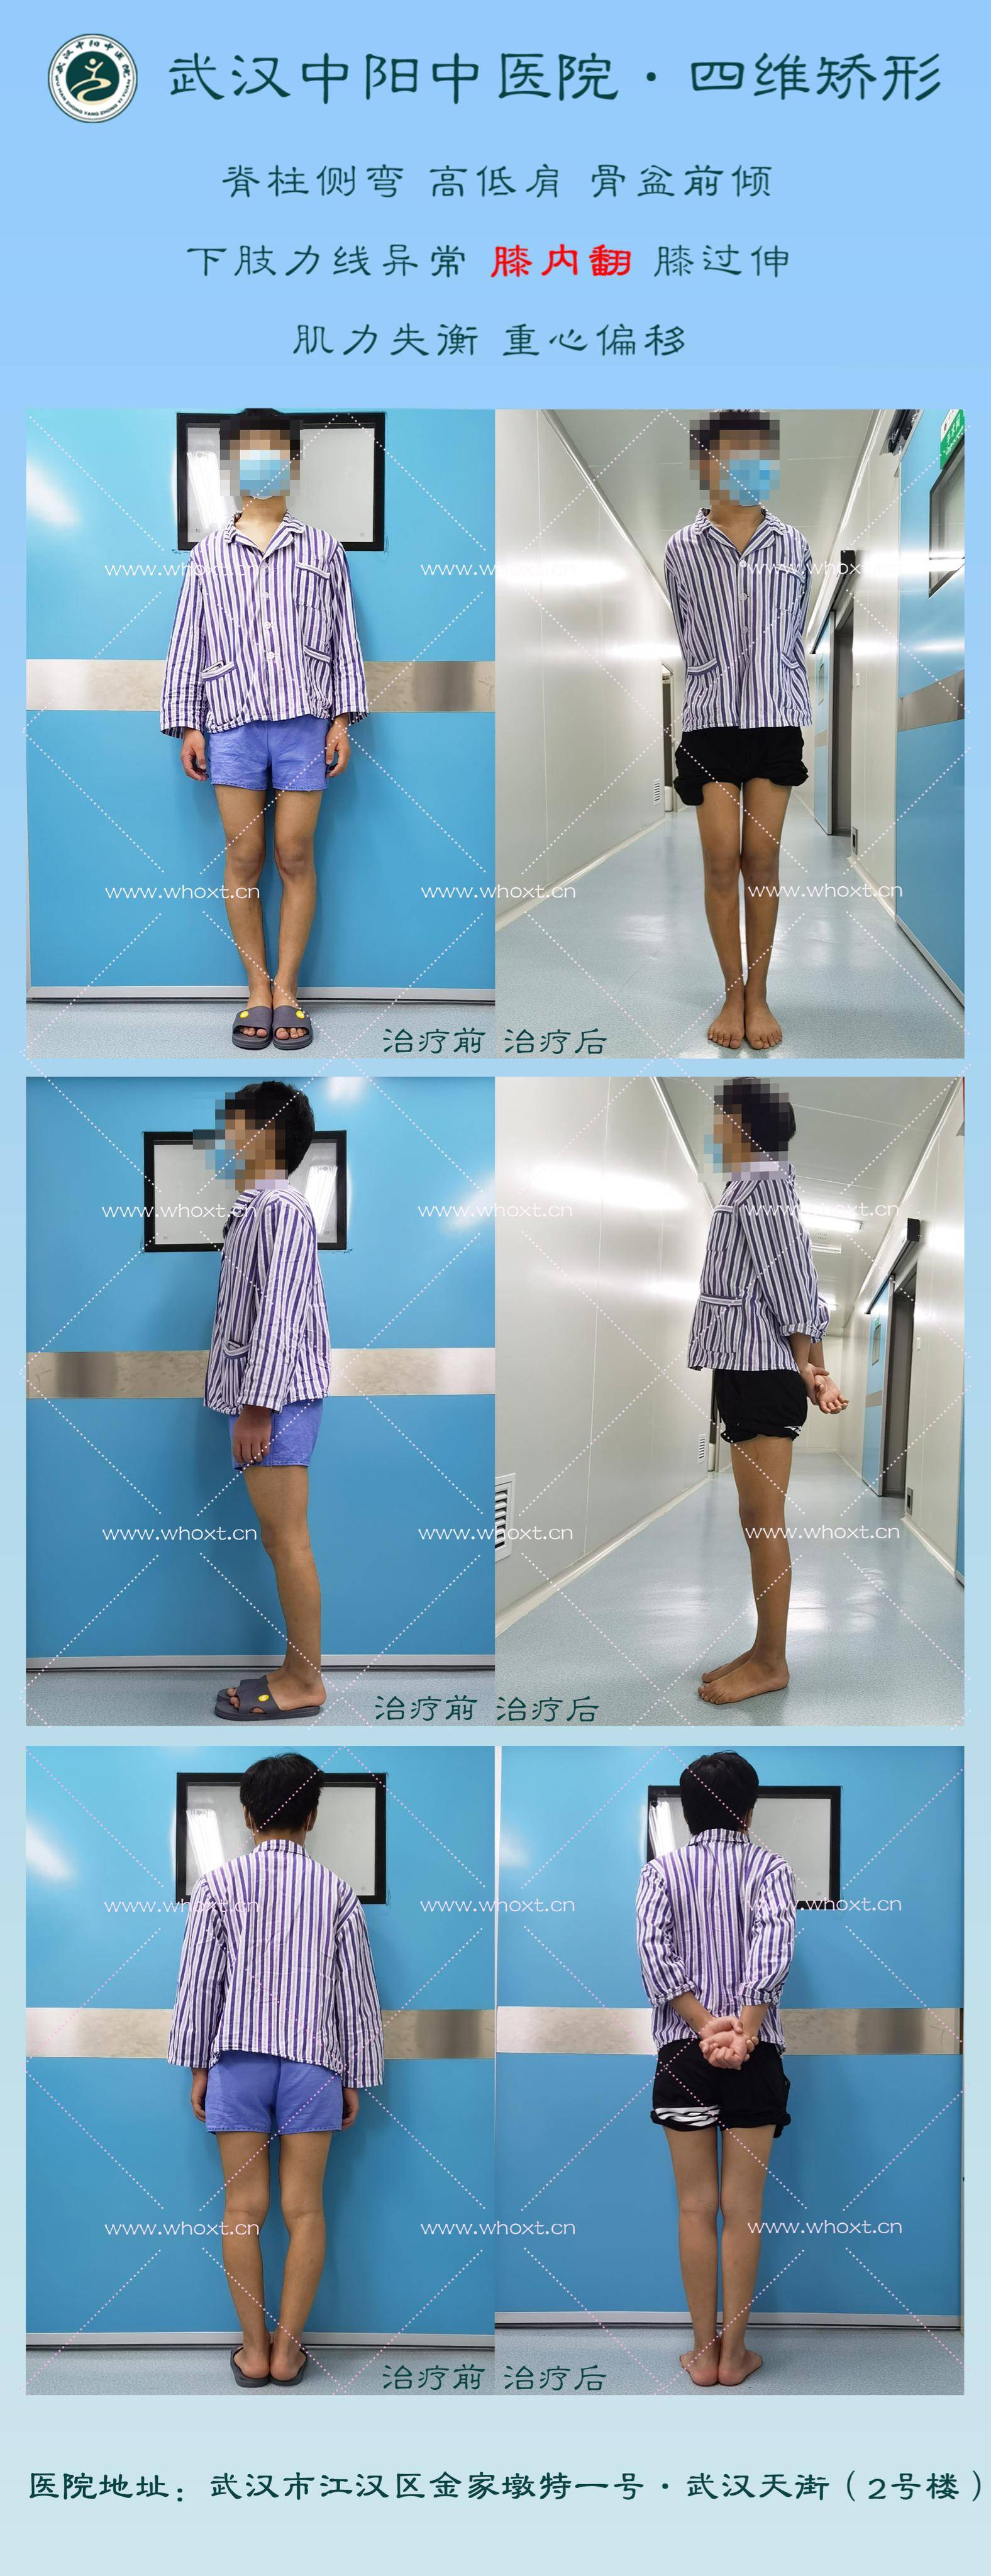 武汉中阳中医院四维矫形微创矫正腿型异常